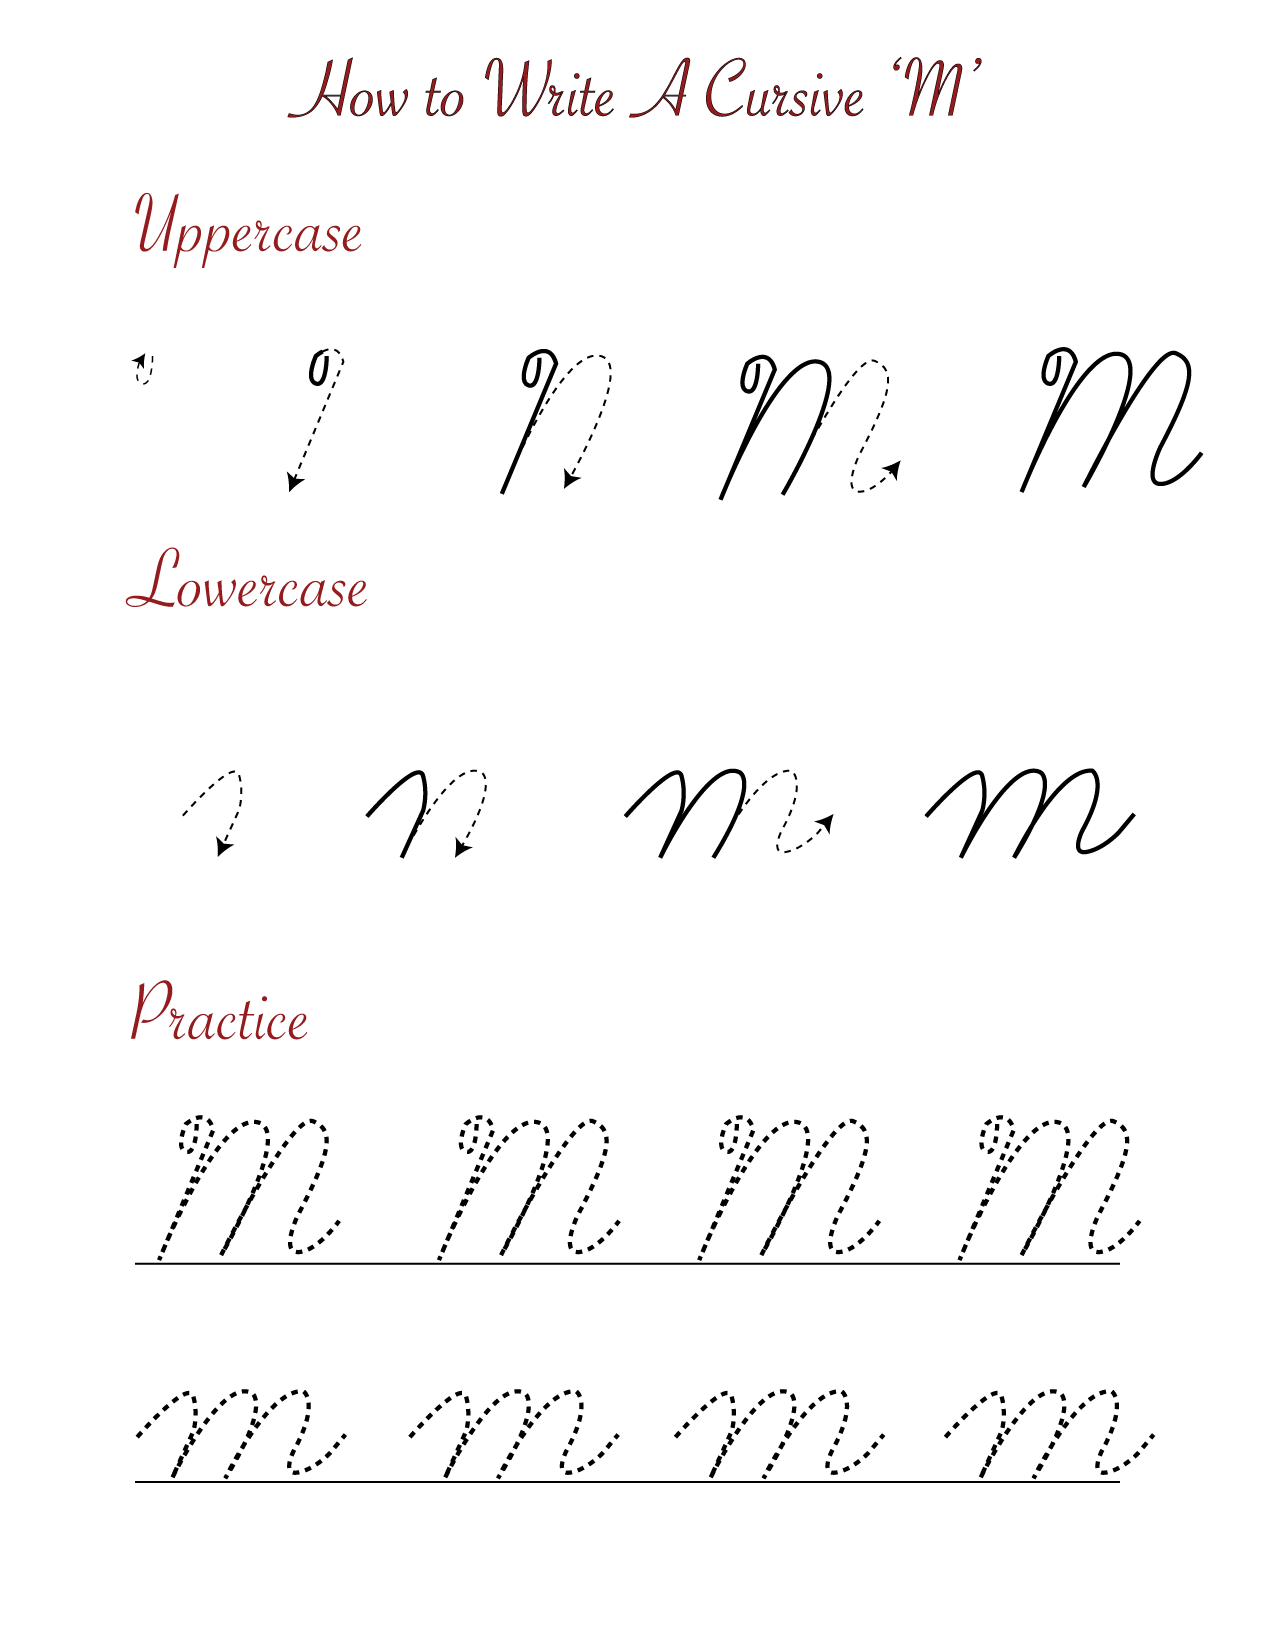 How to write a cursive M